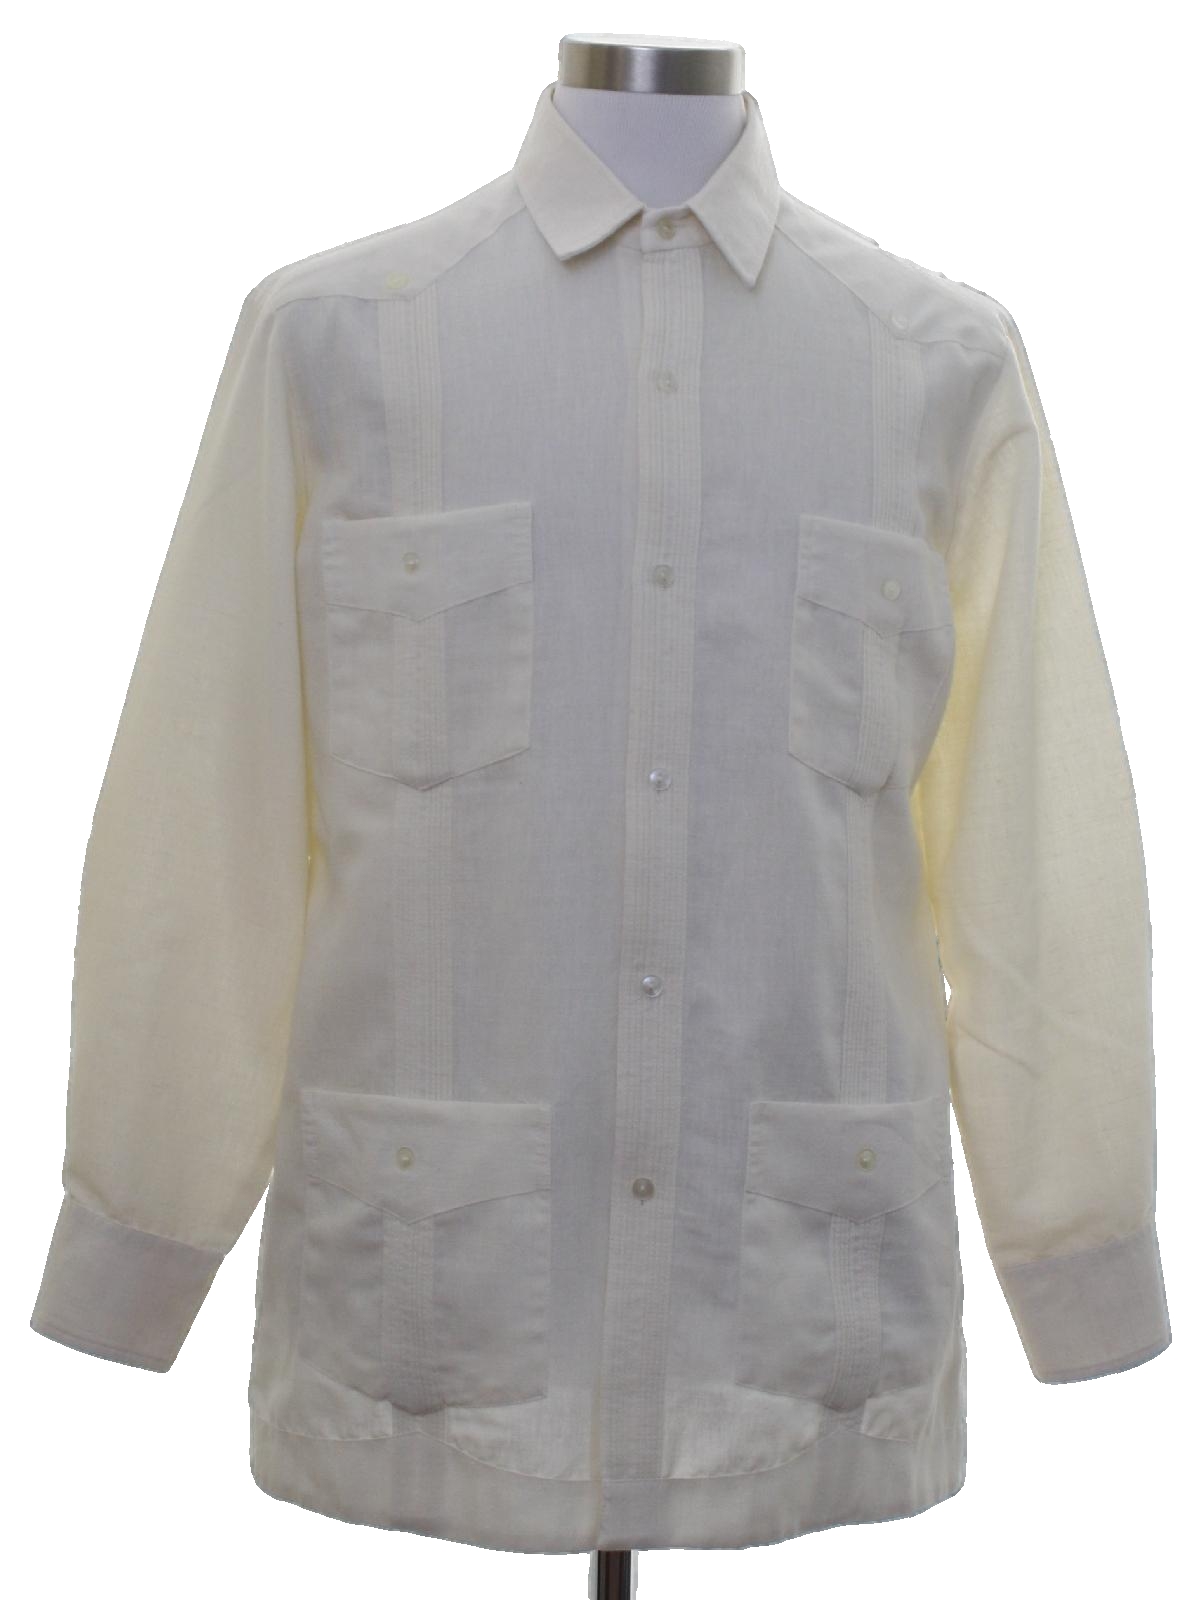 Retro Eighties Guayabera Shirt: 80s -Verano- Mens Cream background ...